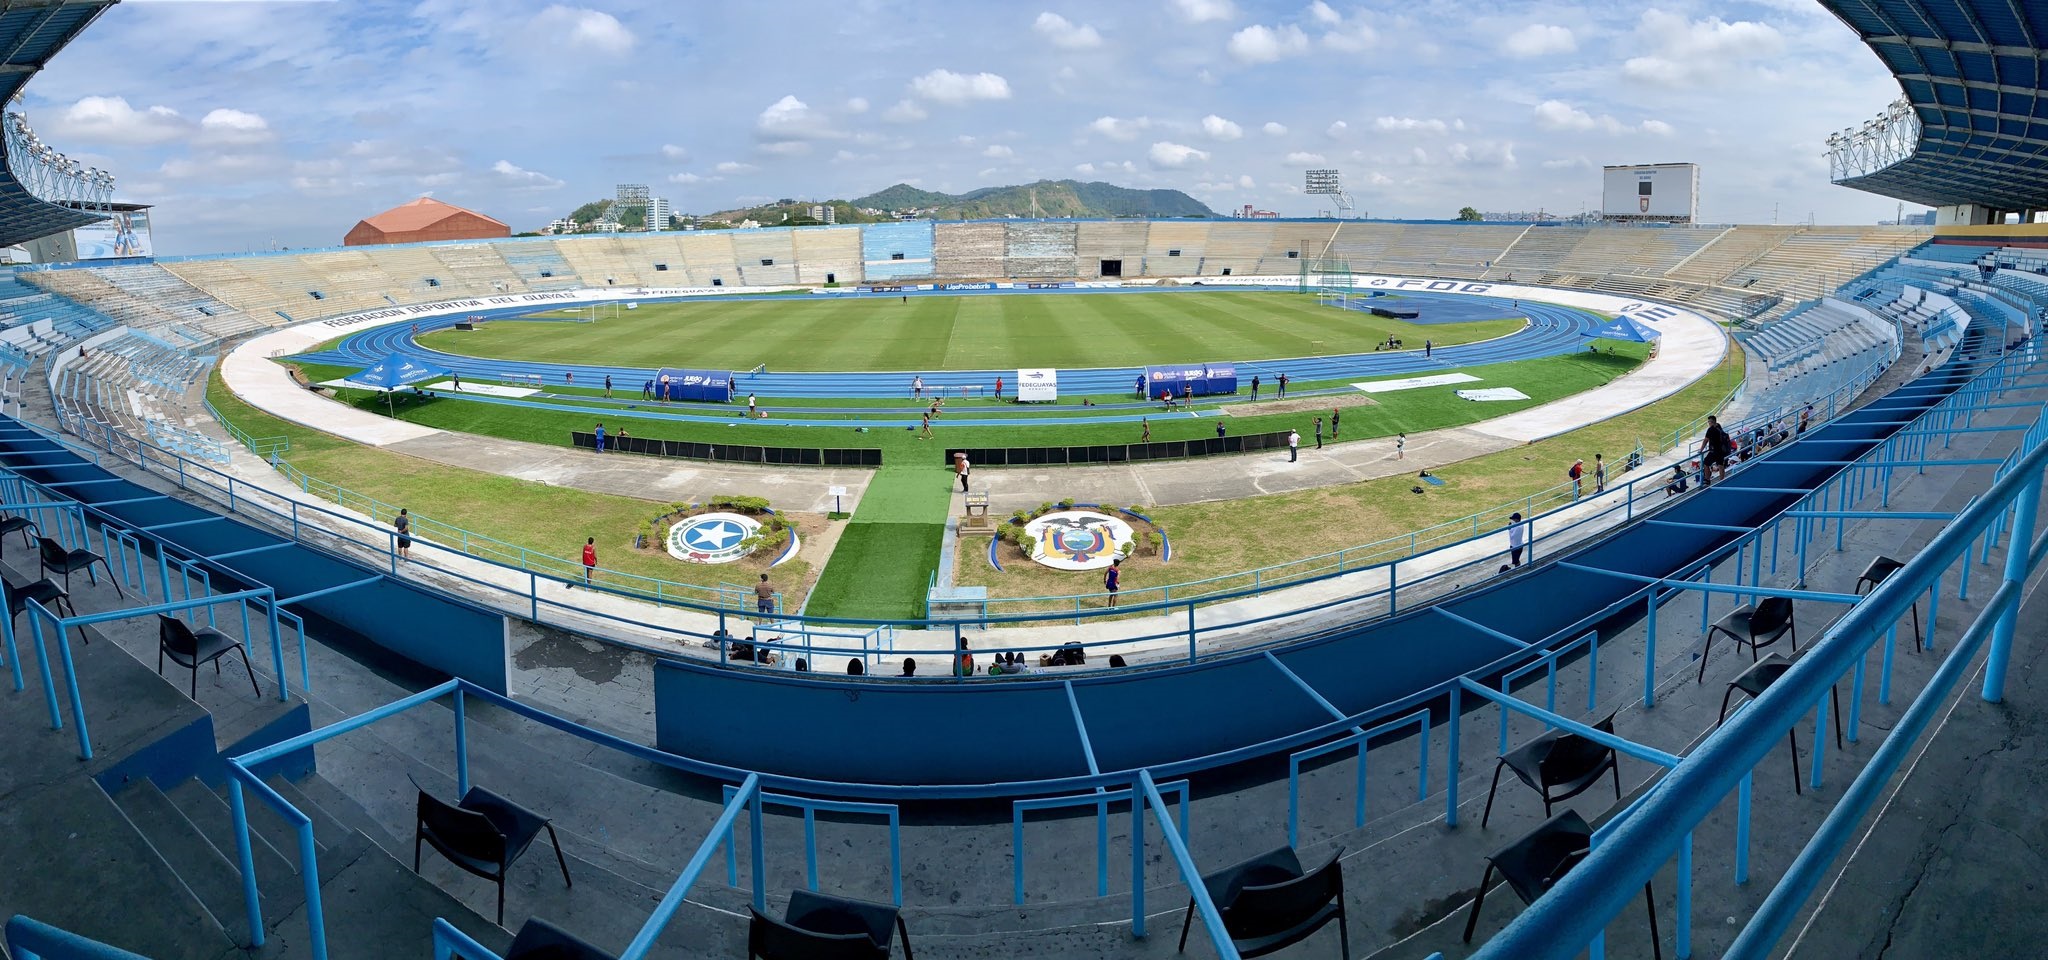 El estadio Alberto Sepencer sería el escenario principal, para la candidatura de Guayaquil. Foto: Fedeguayas